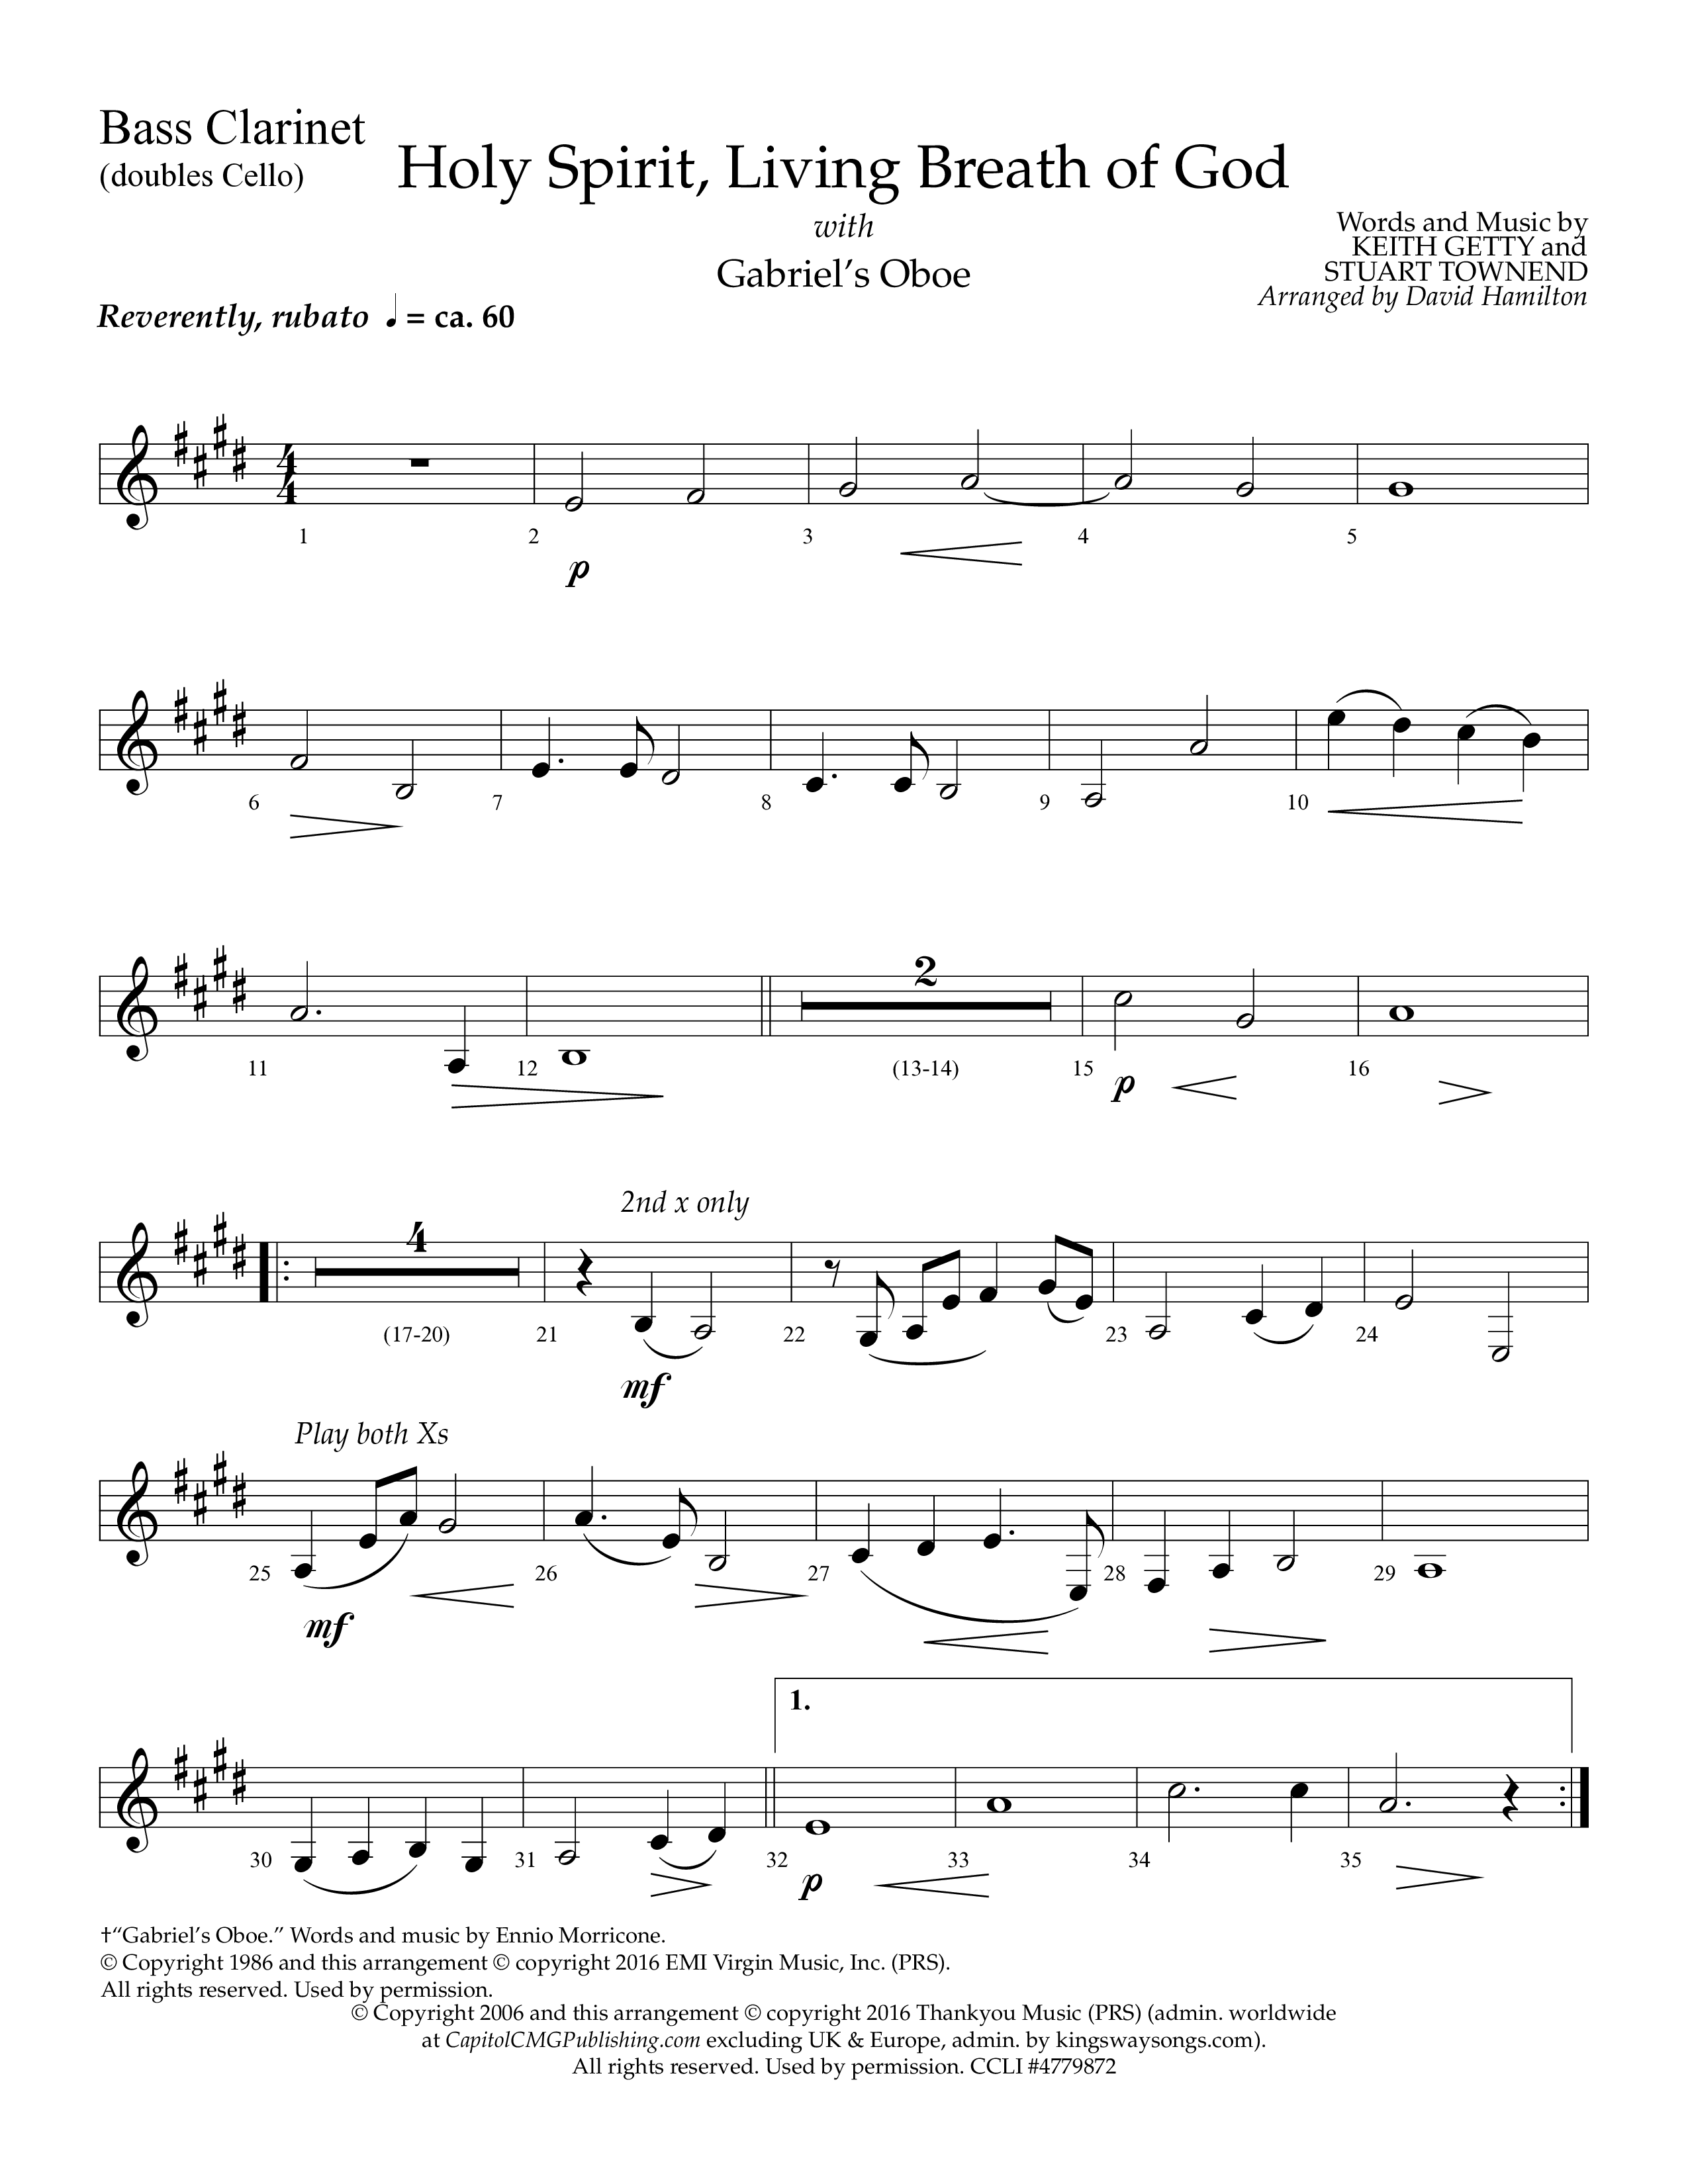 Holy Spirit Living Breath Of God (with Gabriel's Oboe) (Choral Anthem SATB) Bass Clarinet (Lifeway Choral / Arr. David Hamilton)